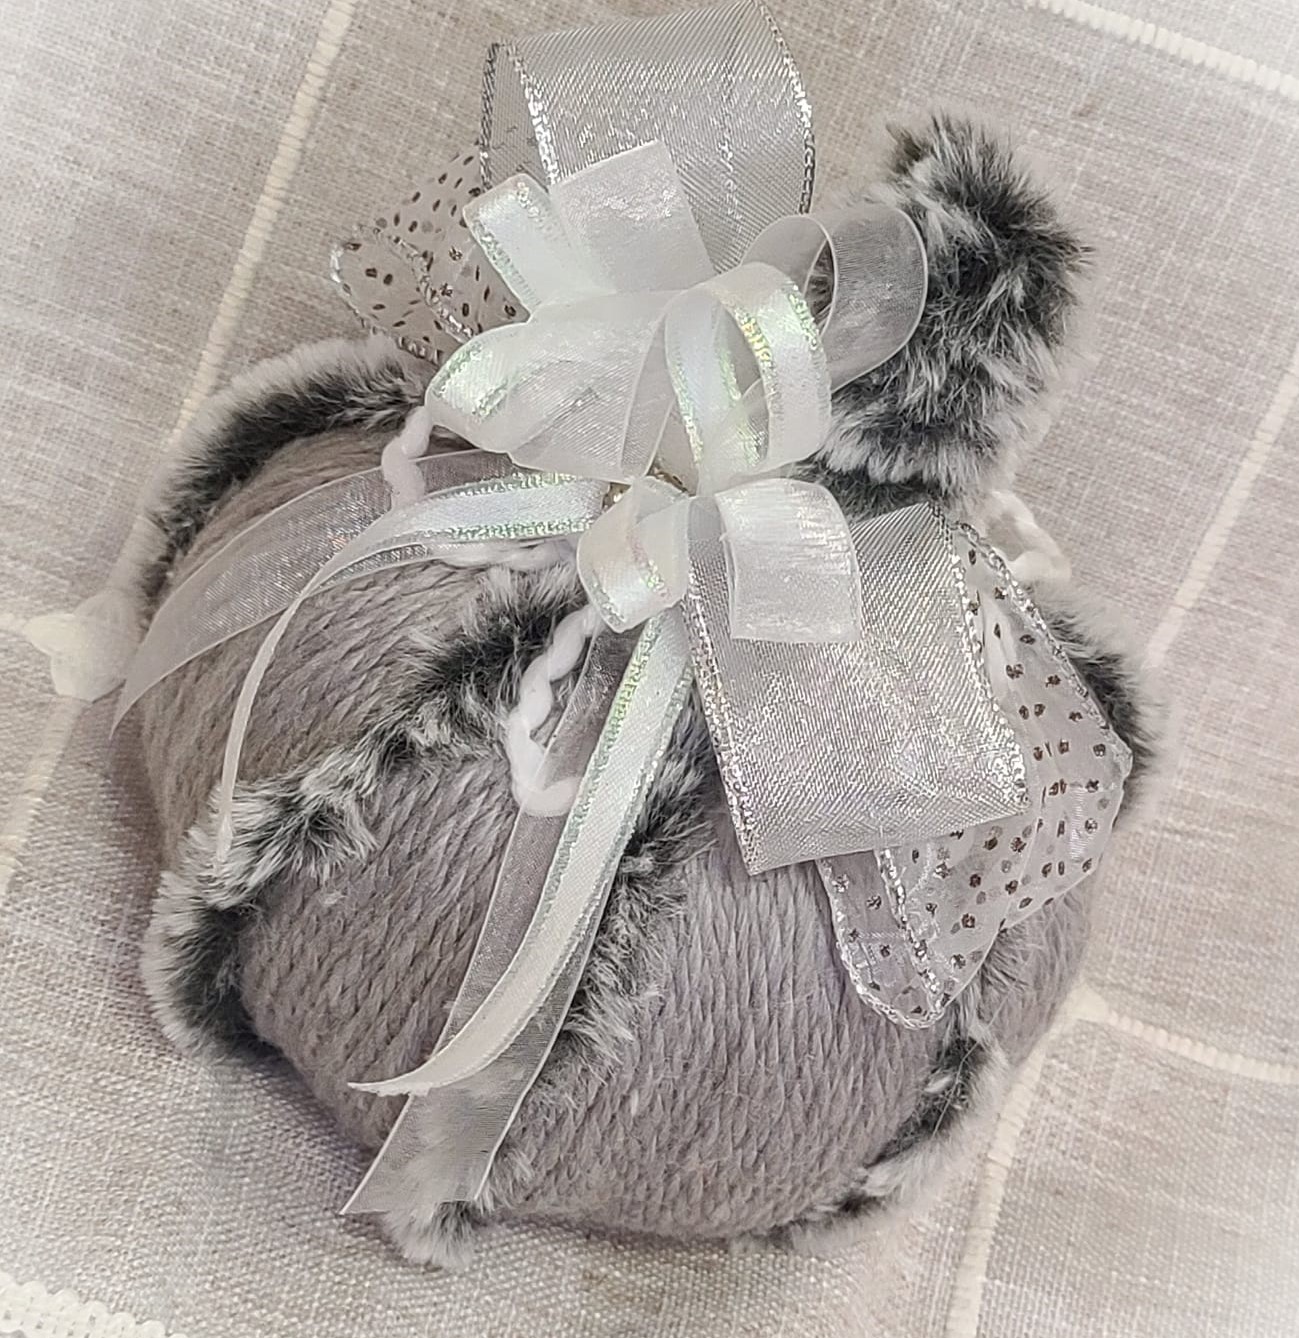 Shabby chic white yarn pumpkin with gray fur and rhinestone